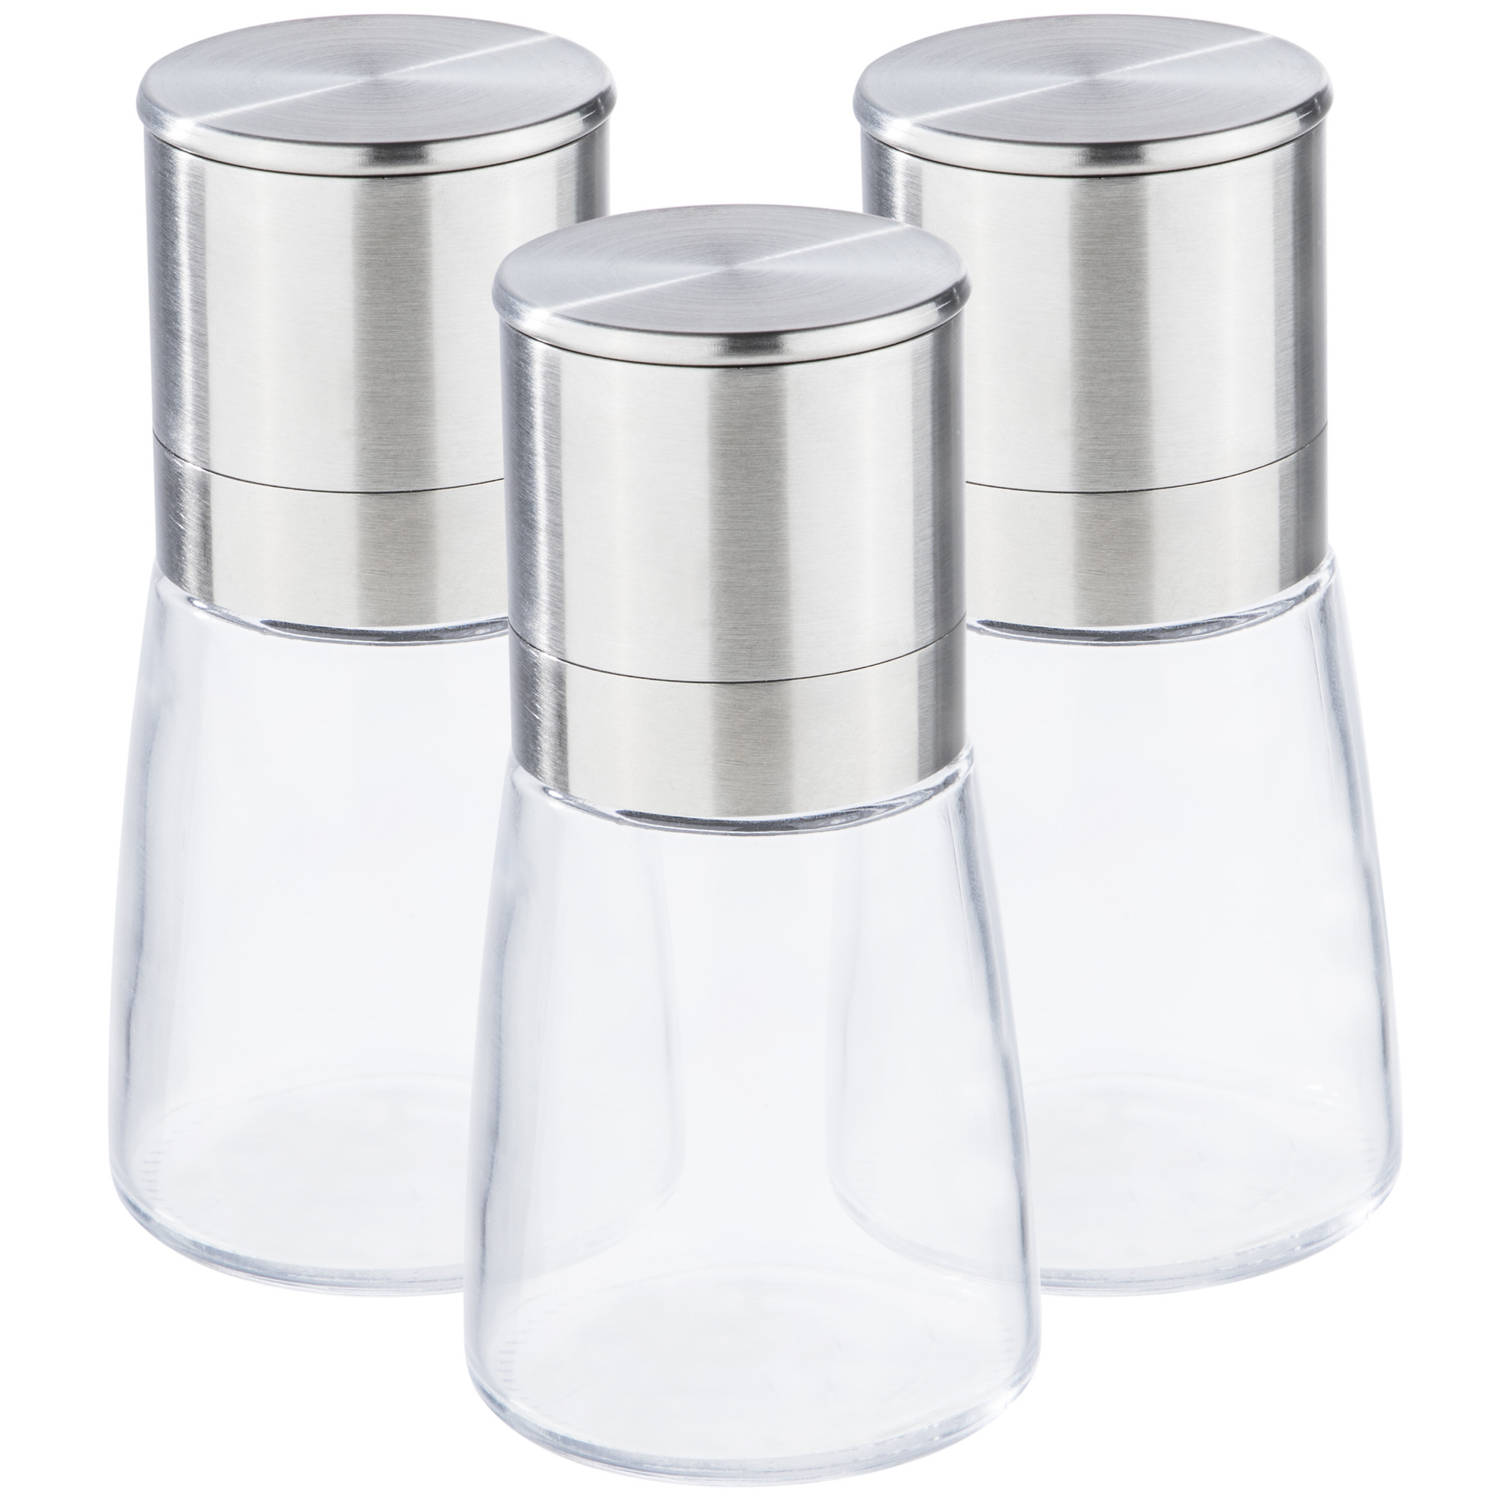 Grijp Vervullen Een zekere Set van 3x stuks kruidenmolen/pepermolen/zoutmolen RVS/glas  transparant/zilver 13 cm - Peper en zoutstel | Blokker